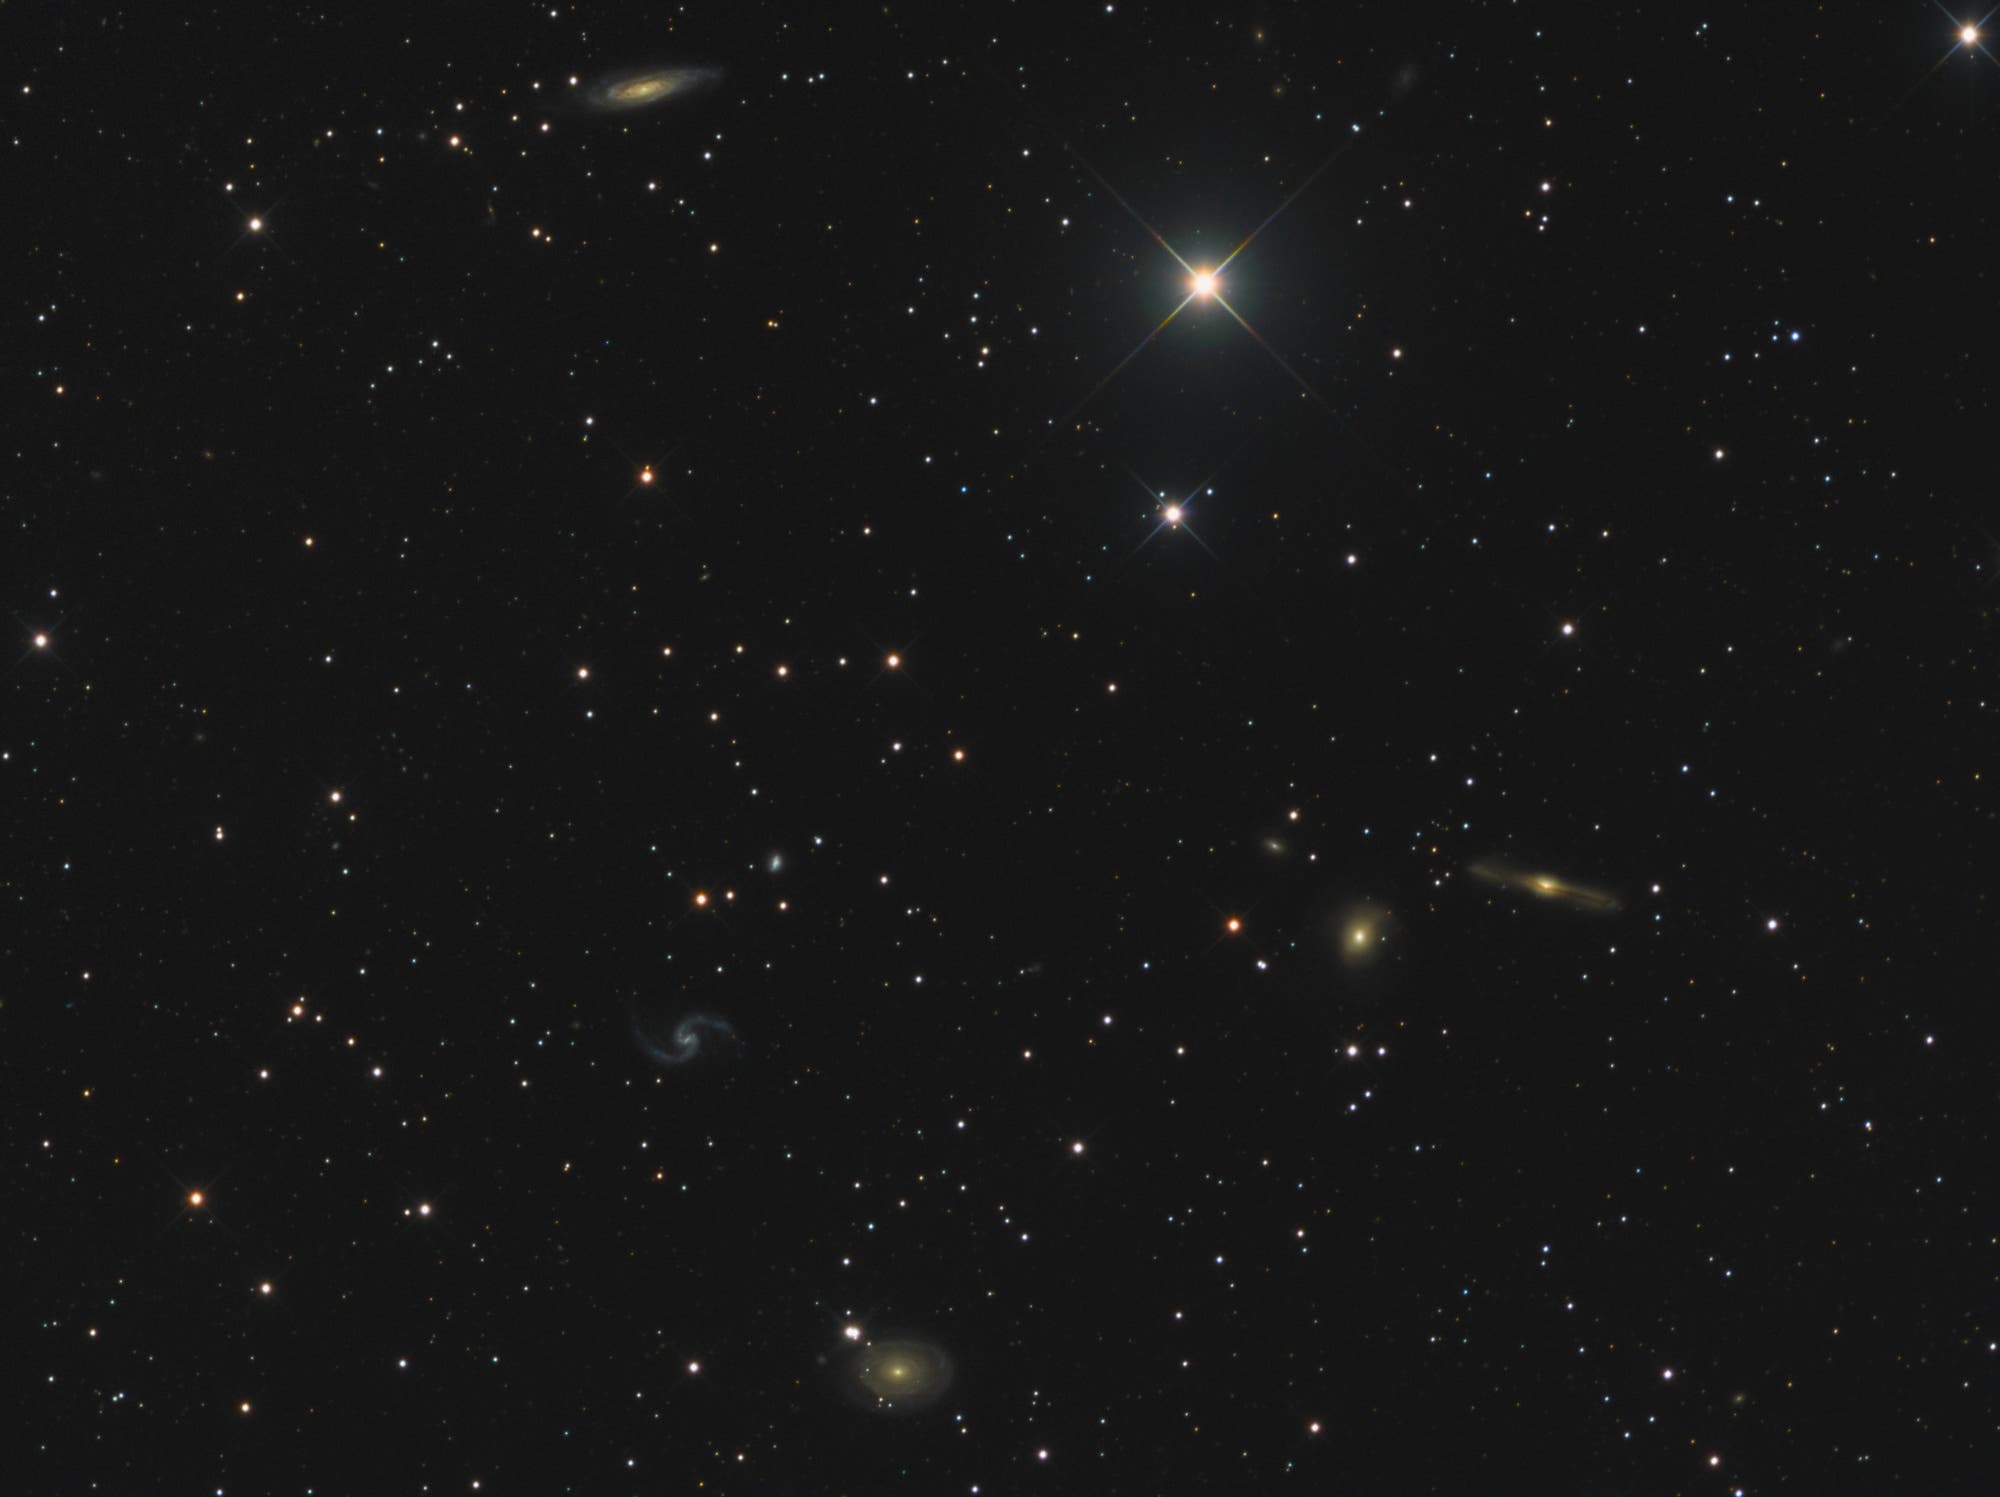 Arp 31 (IC 167)